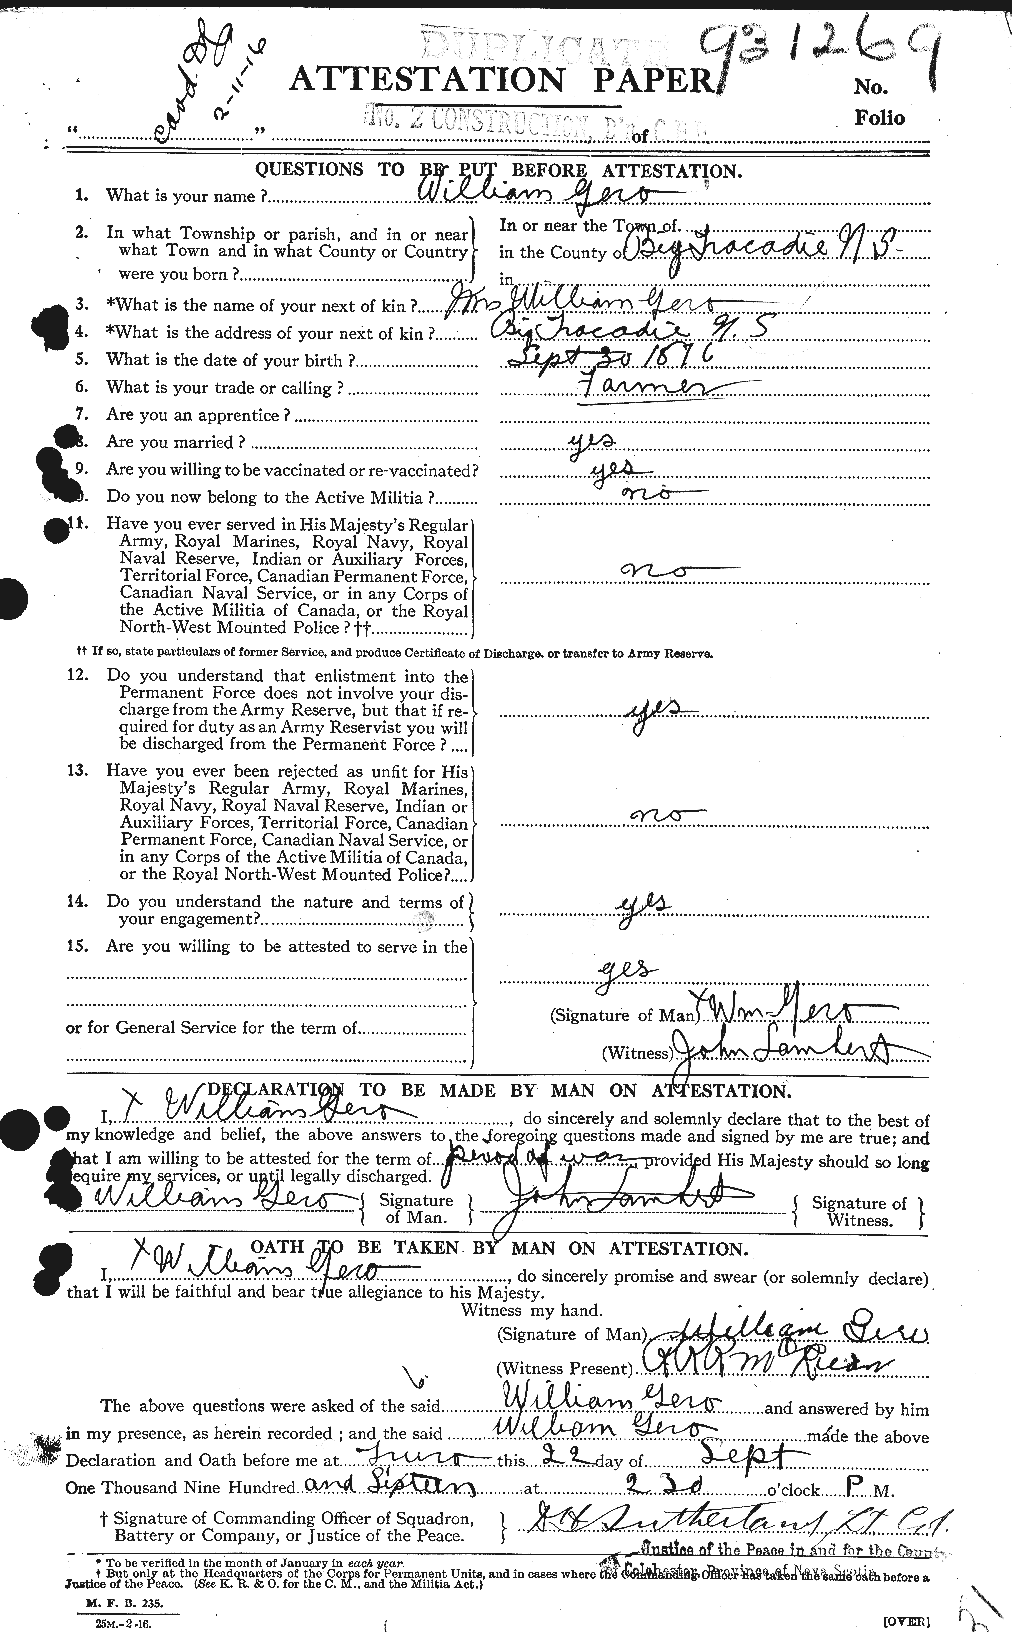 Dossiers du Personnel de la Première Guerre mondiale - CEC 344183a